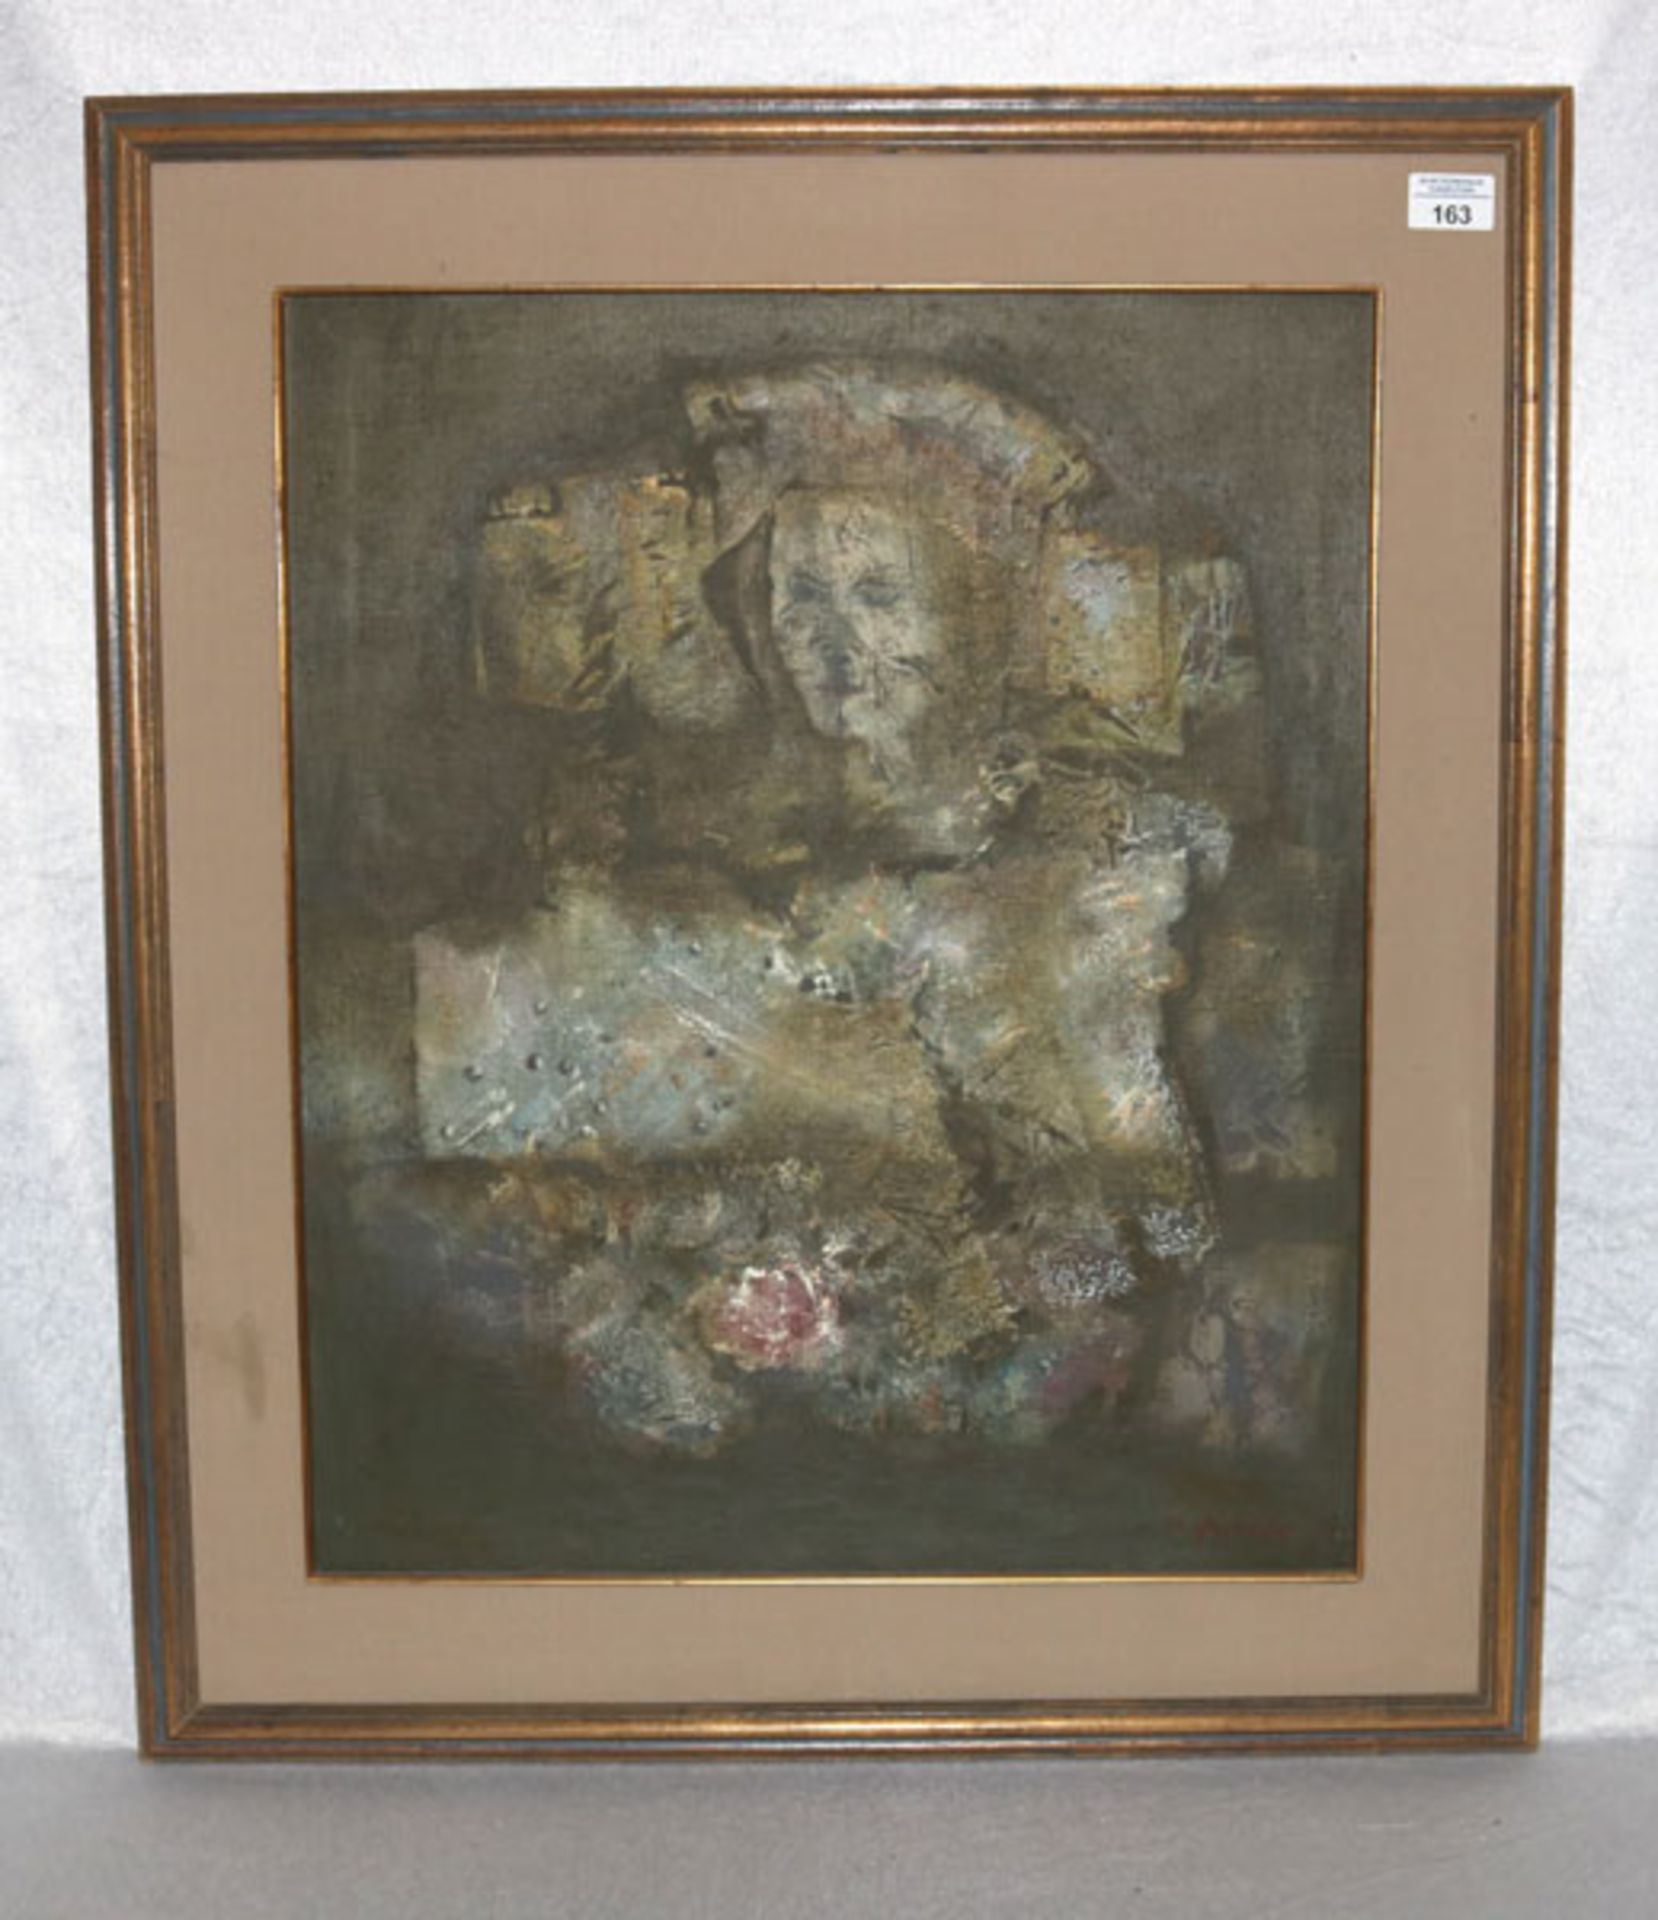 Gemälde ÖL/LW 'Damenbildnis', signiert Marco Zubak, * 1979 Zagreb, Lit.: Artprice, gerahmt, Rahmen